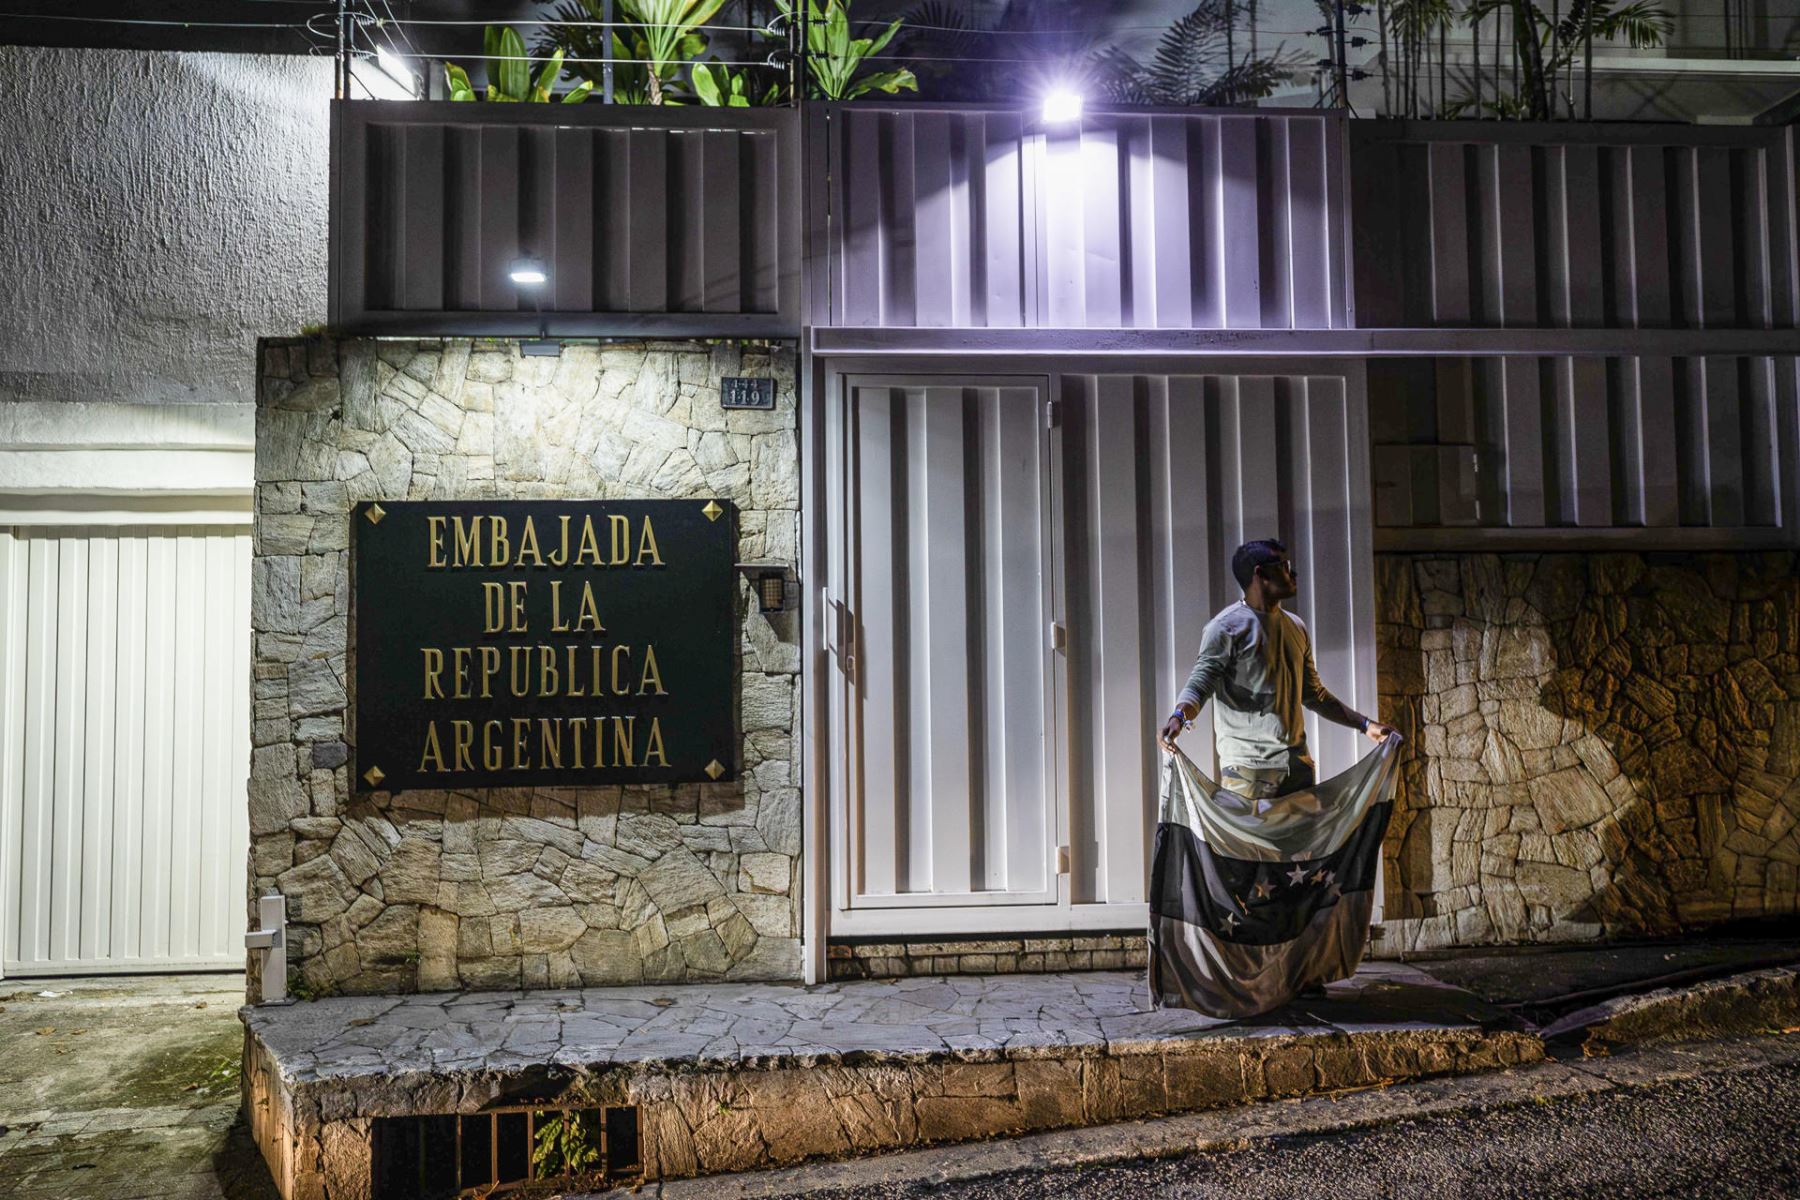 Brasil asume la representación argentina en Venezuela tras salida de sus diplomáticos.